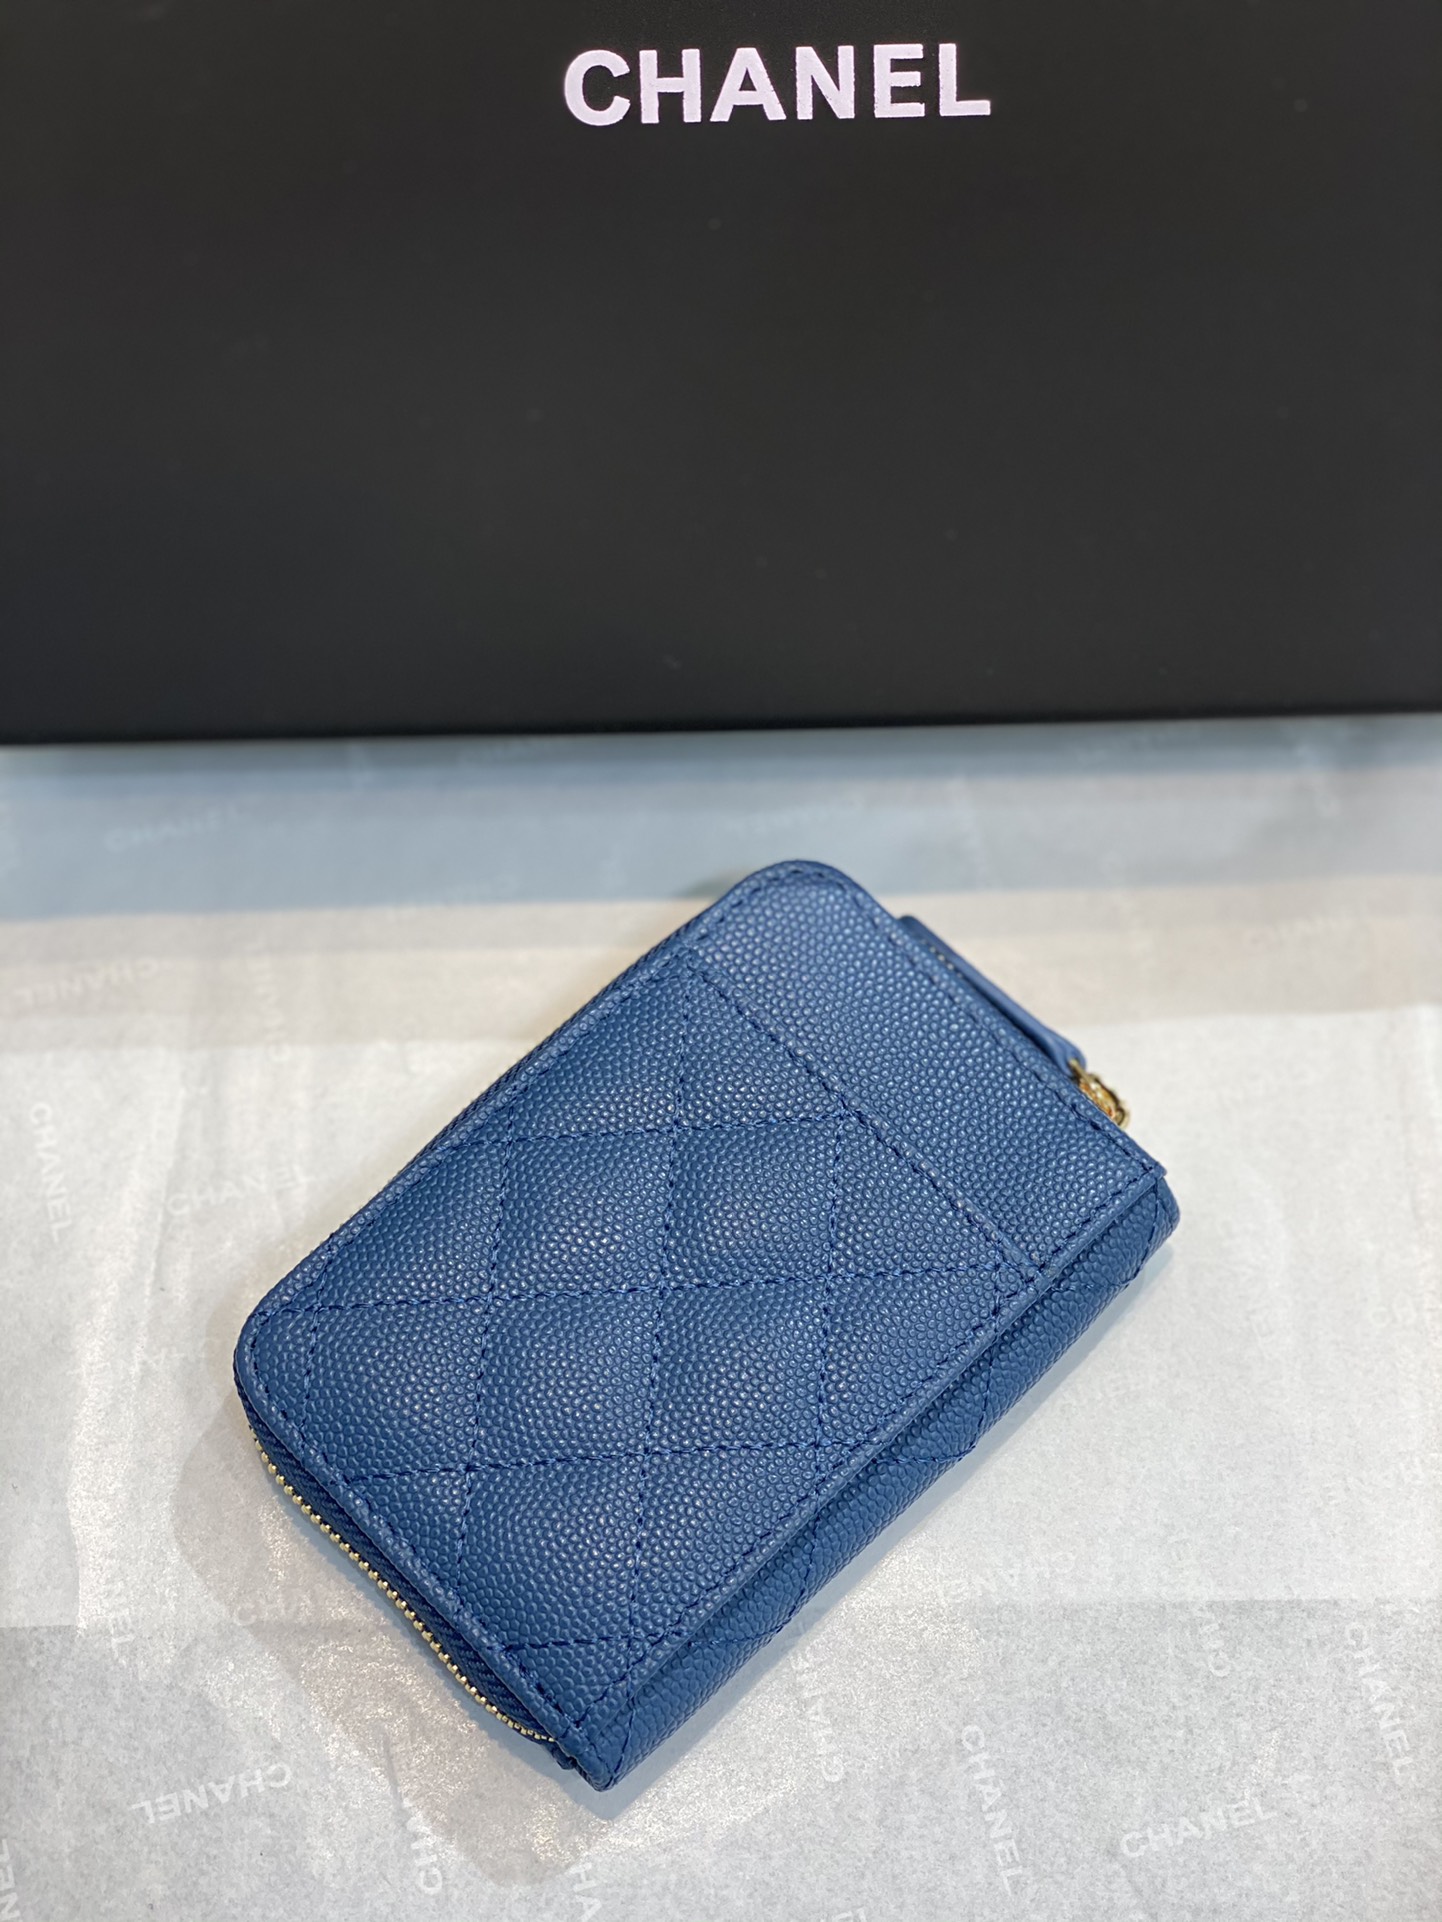 Chanel小零钱包 高品质 经典菱格设计搭配小羊皮～金扣 7.5×2×11.cm